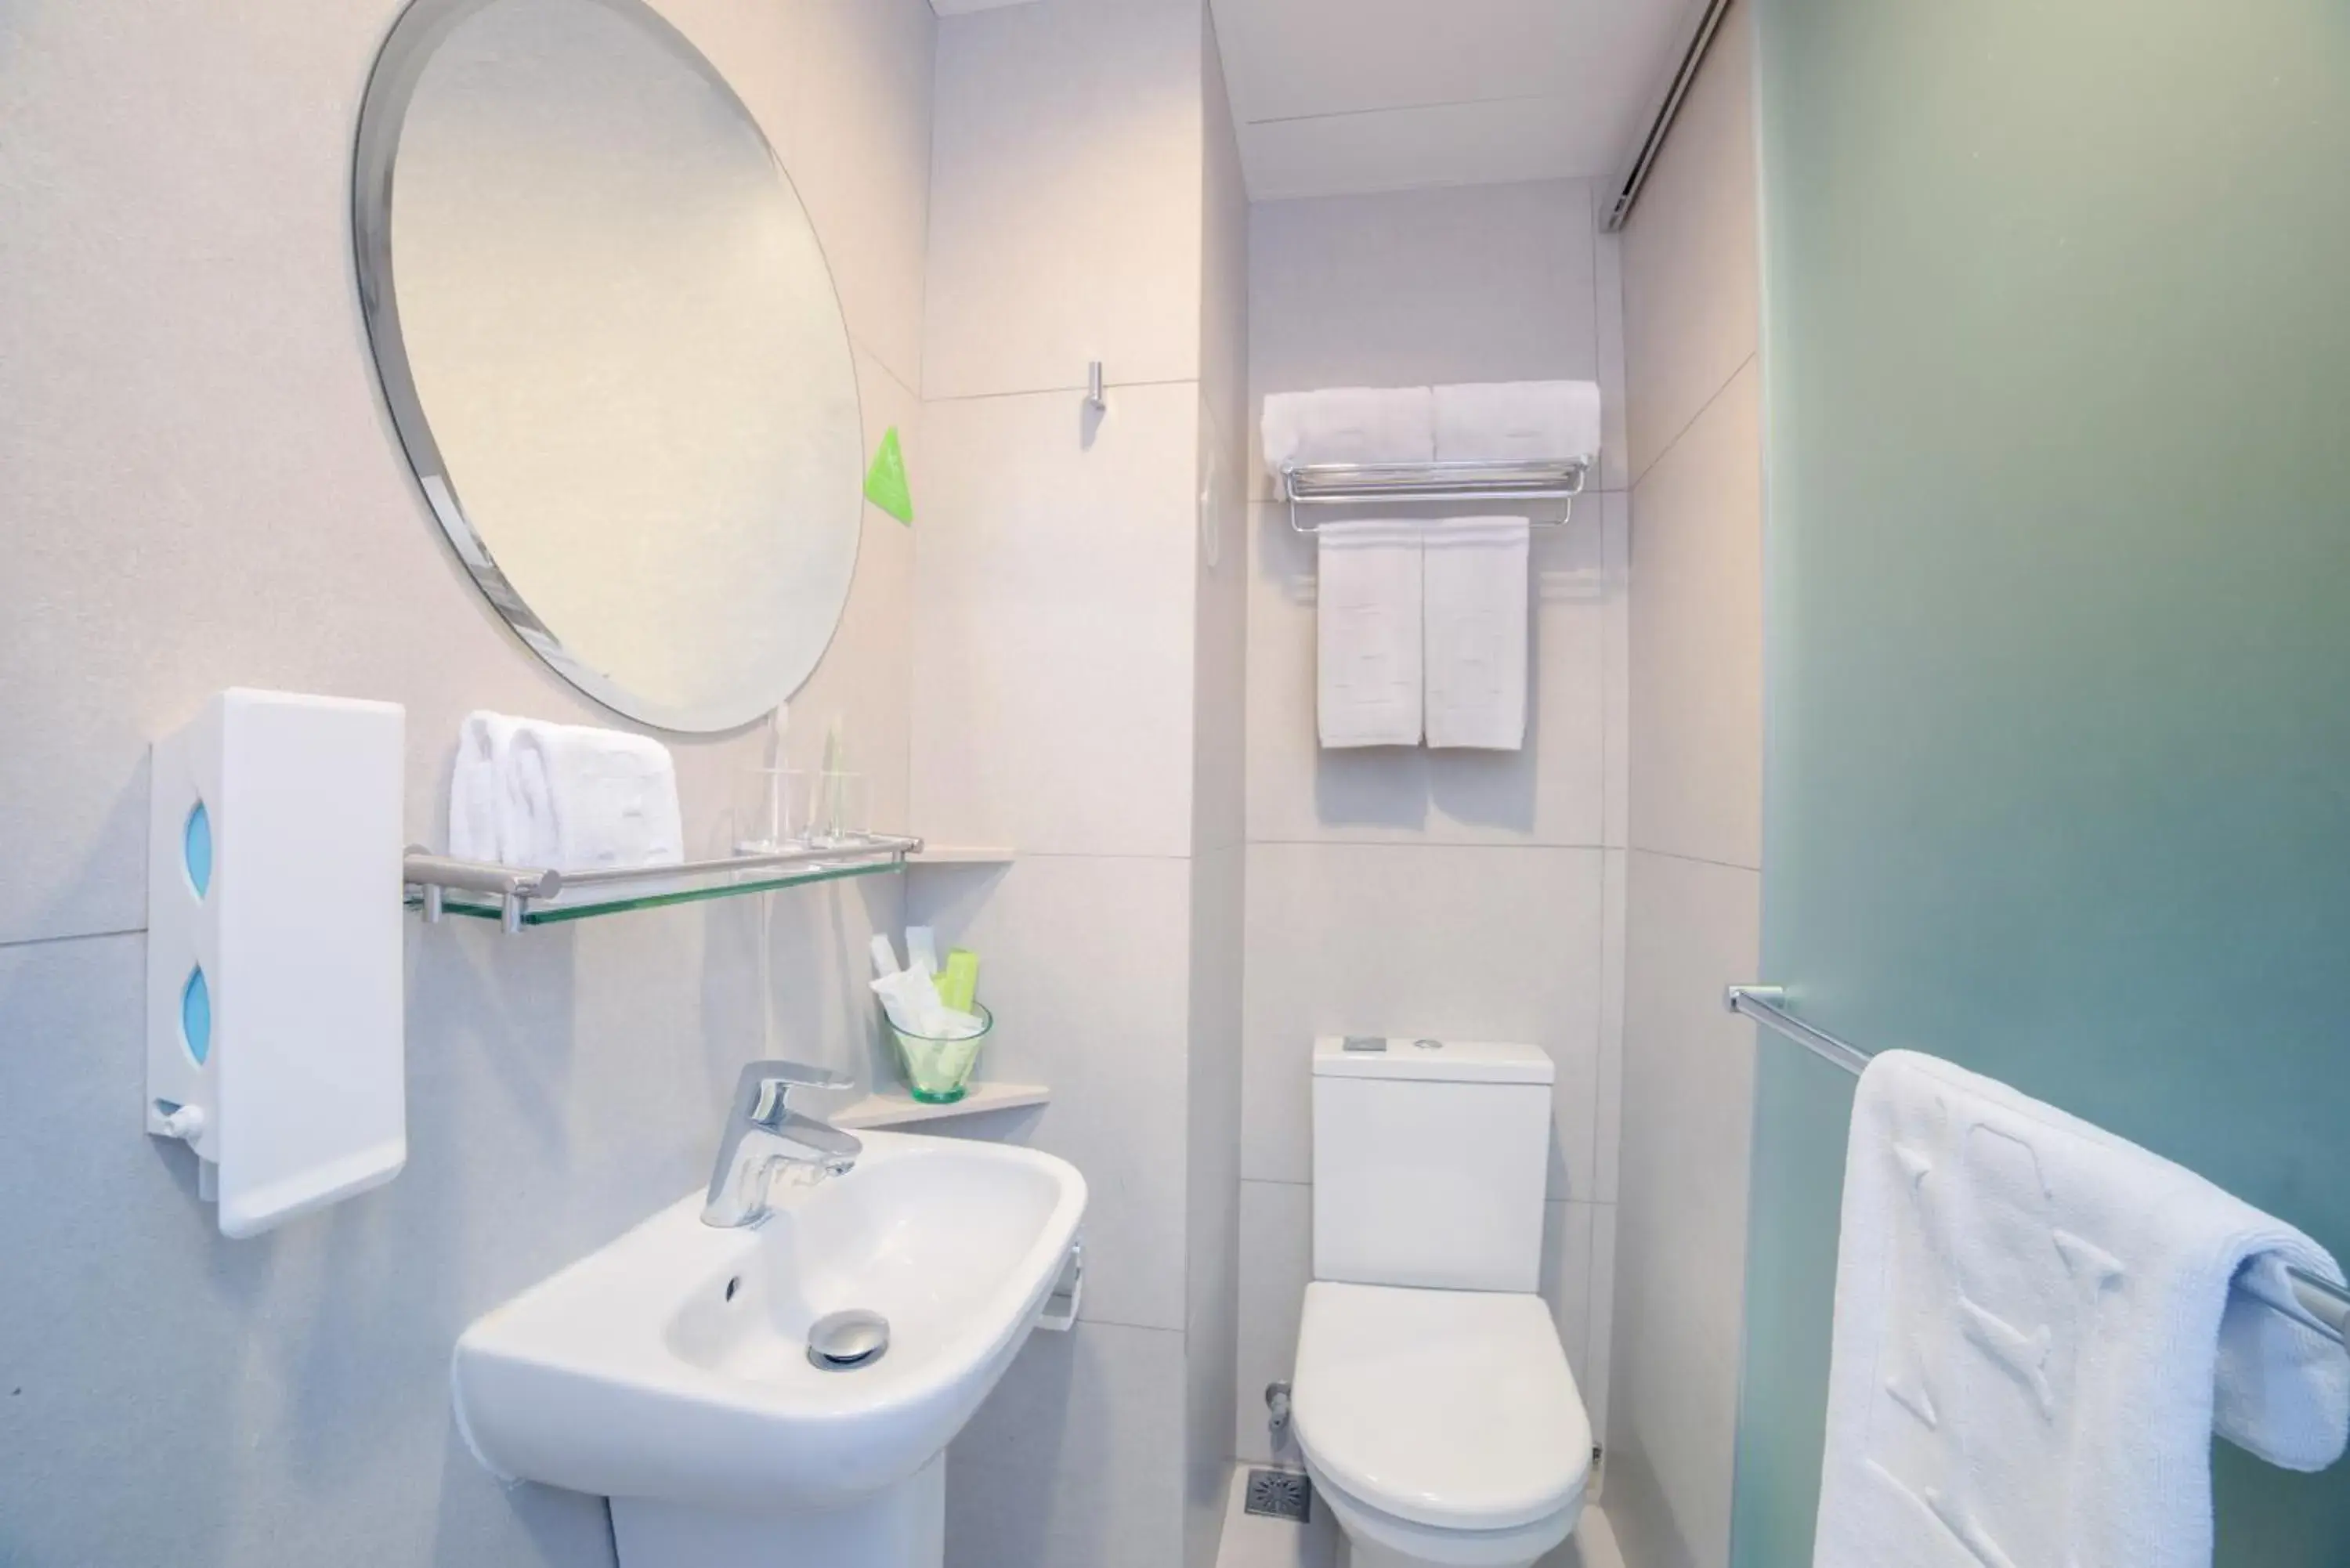 Toilet, Bathroom in Hotel Ease Mong Kok